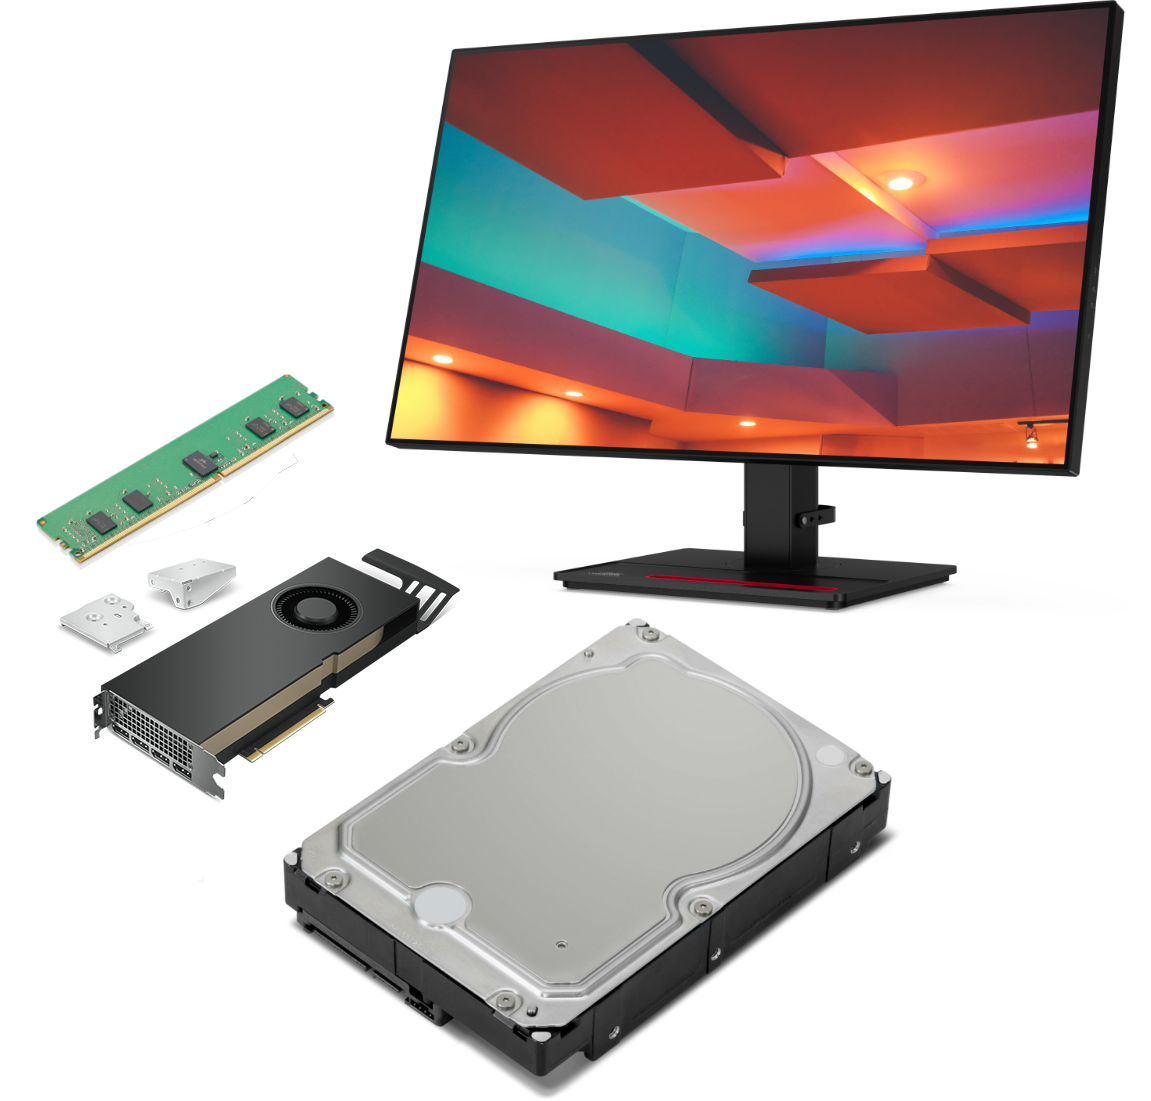 5 accessoires compatibles avec la station de travail Lenovo ThinkStation P620 tour, dont un moniteur et une carte graphique.